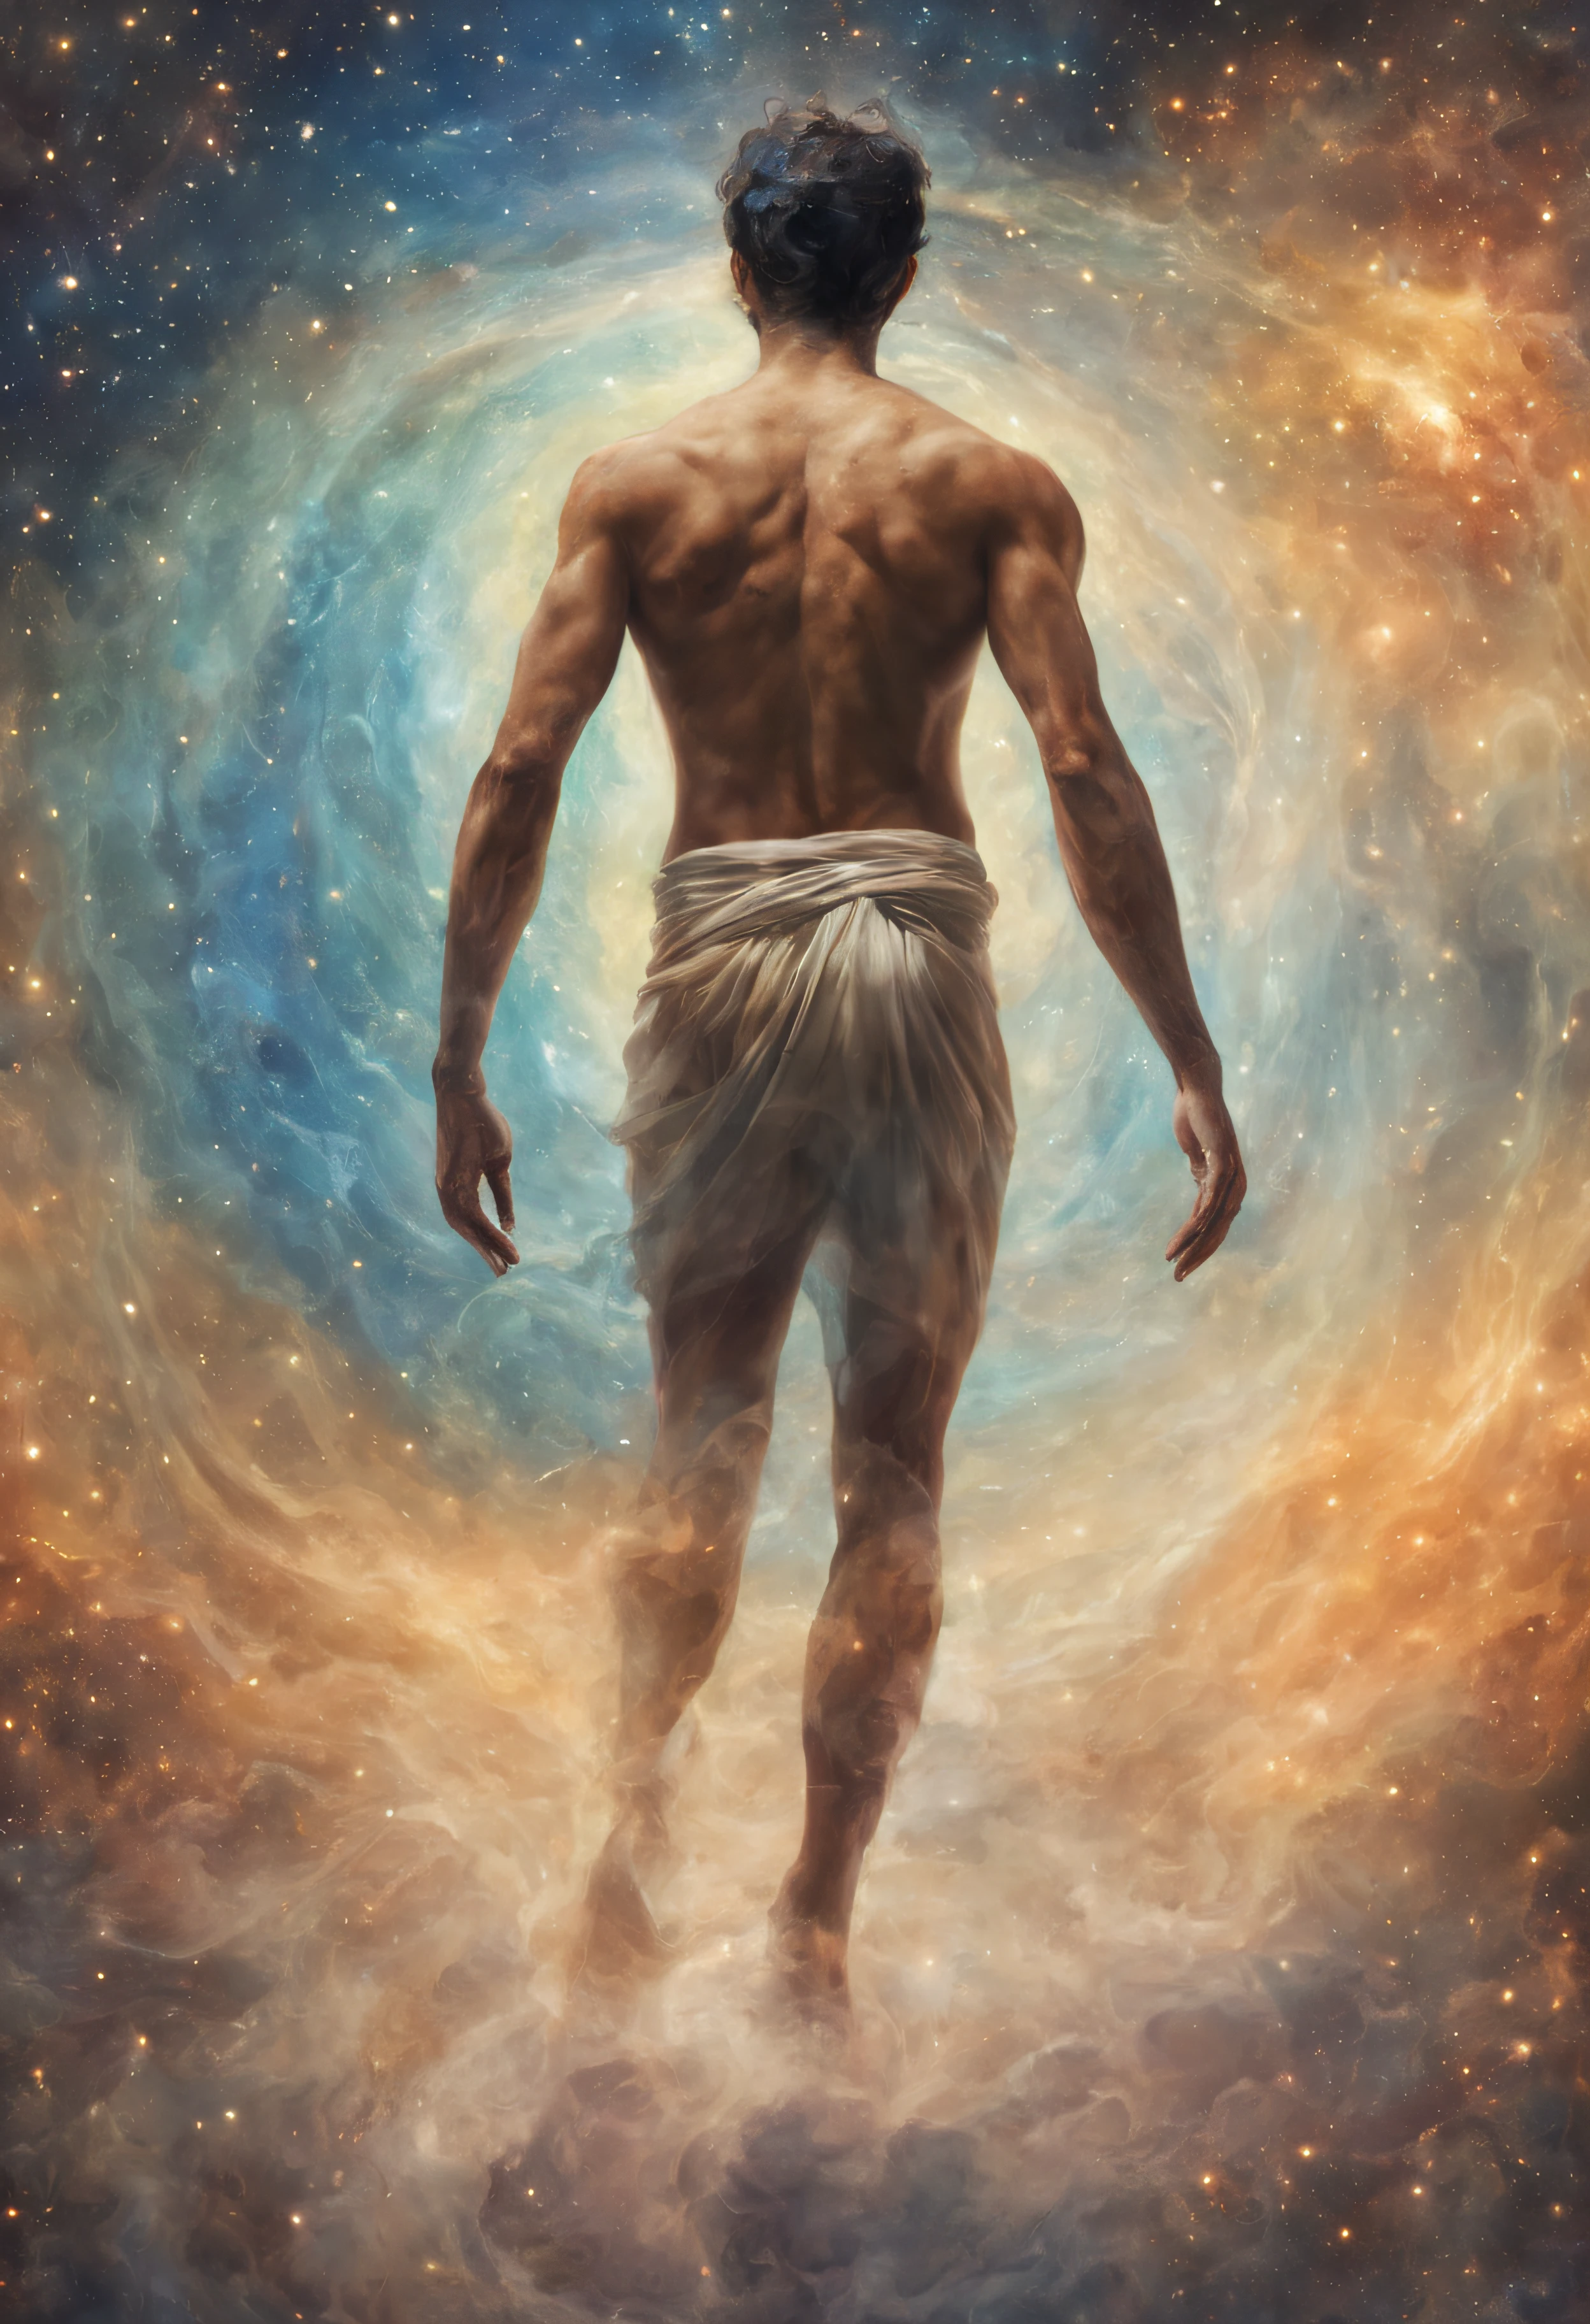 ランニングマン, 男性の後ろ姿, 宇宙の真ん中にいる神秘的な男 星体, 深い瞑想, エーテル的な雰囲気, オーリック